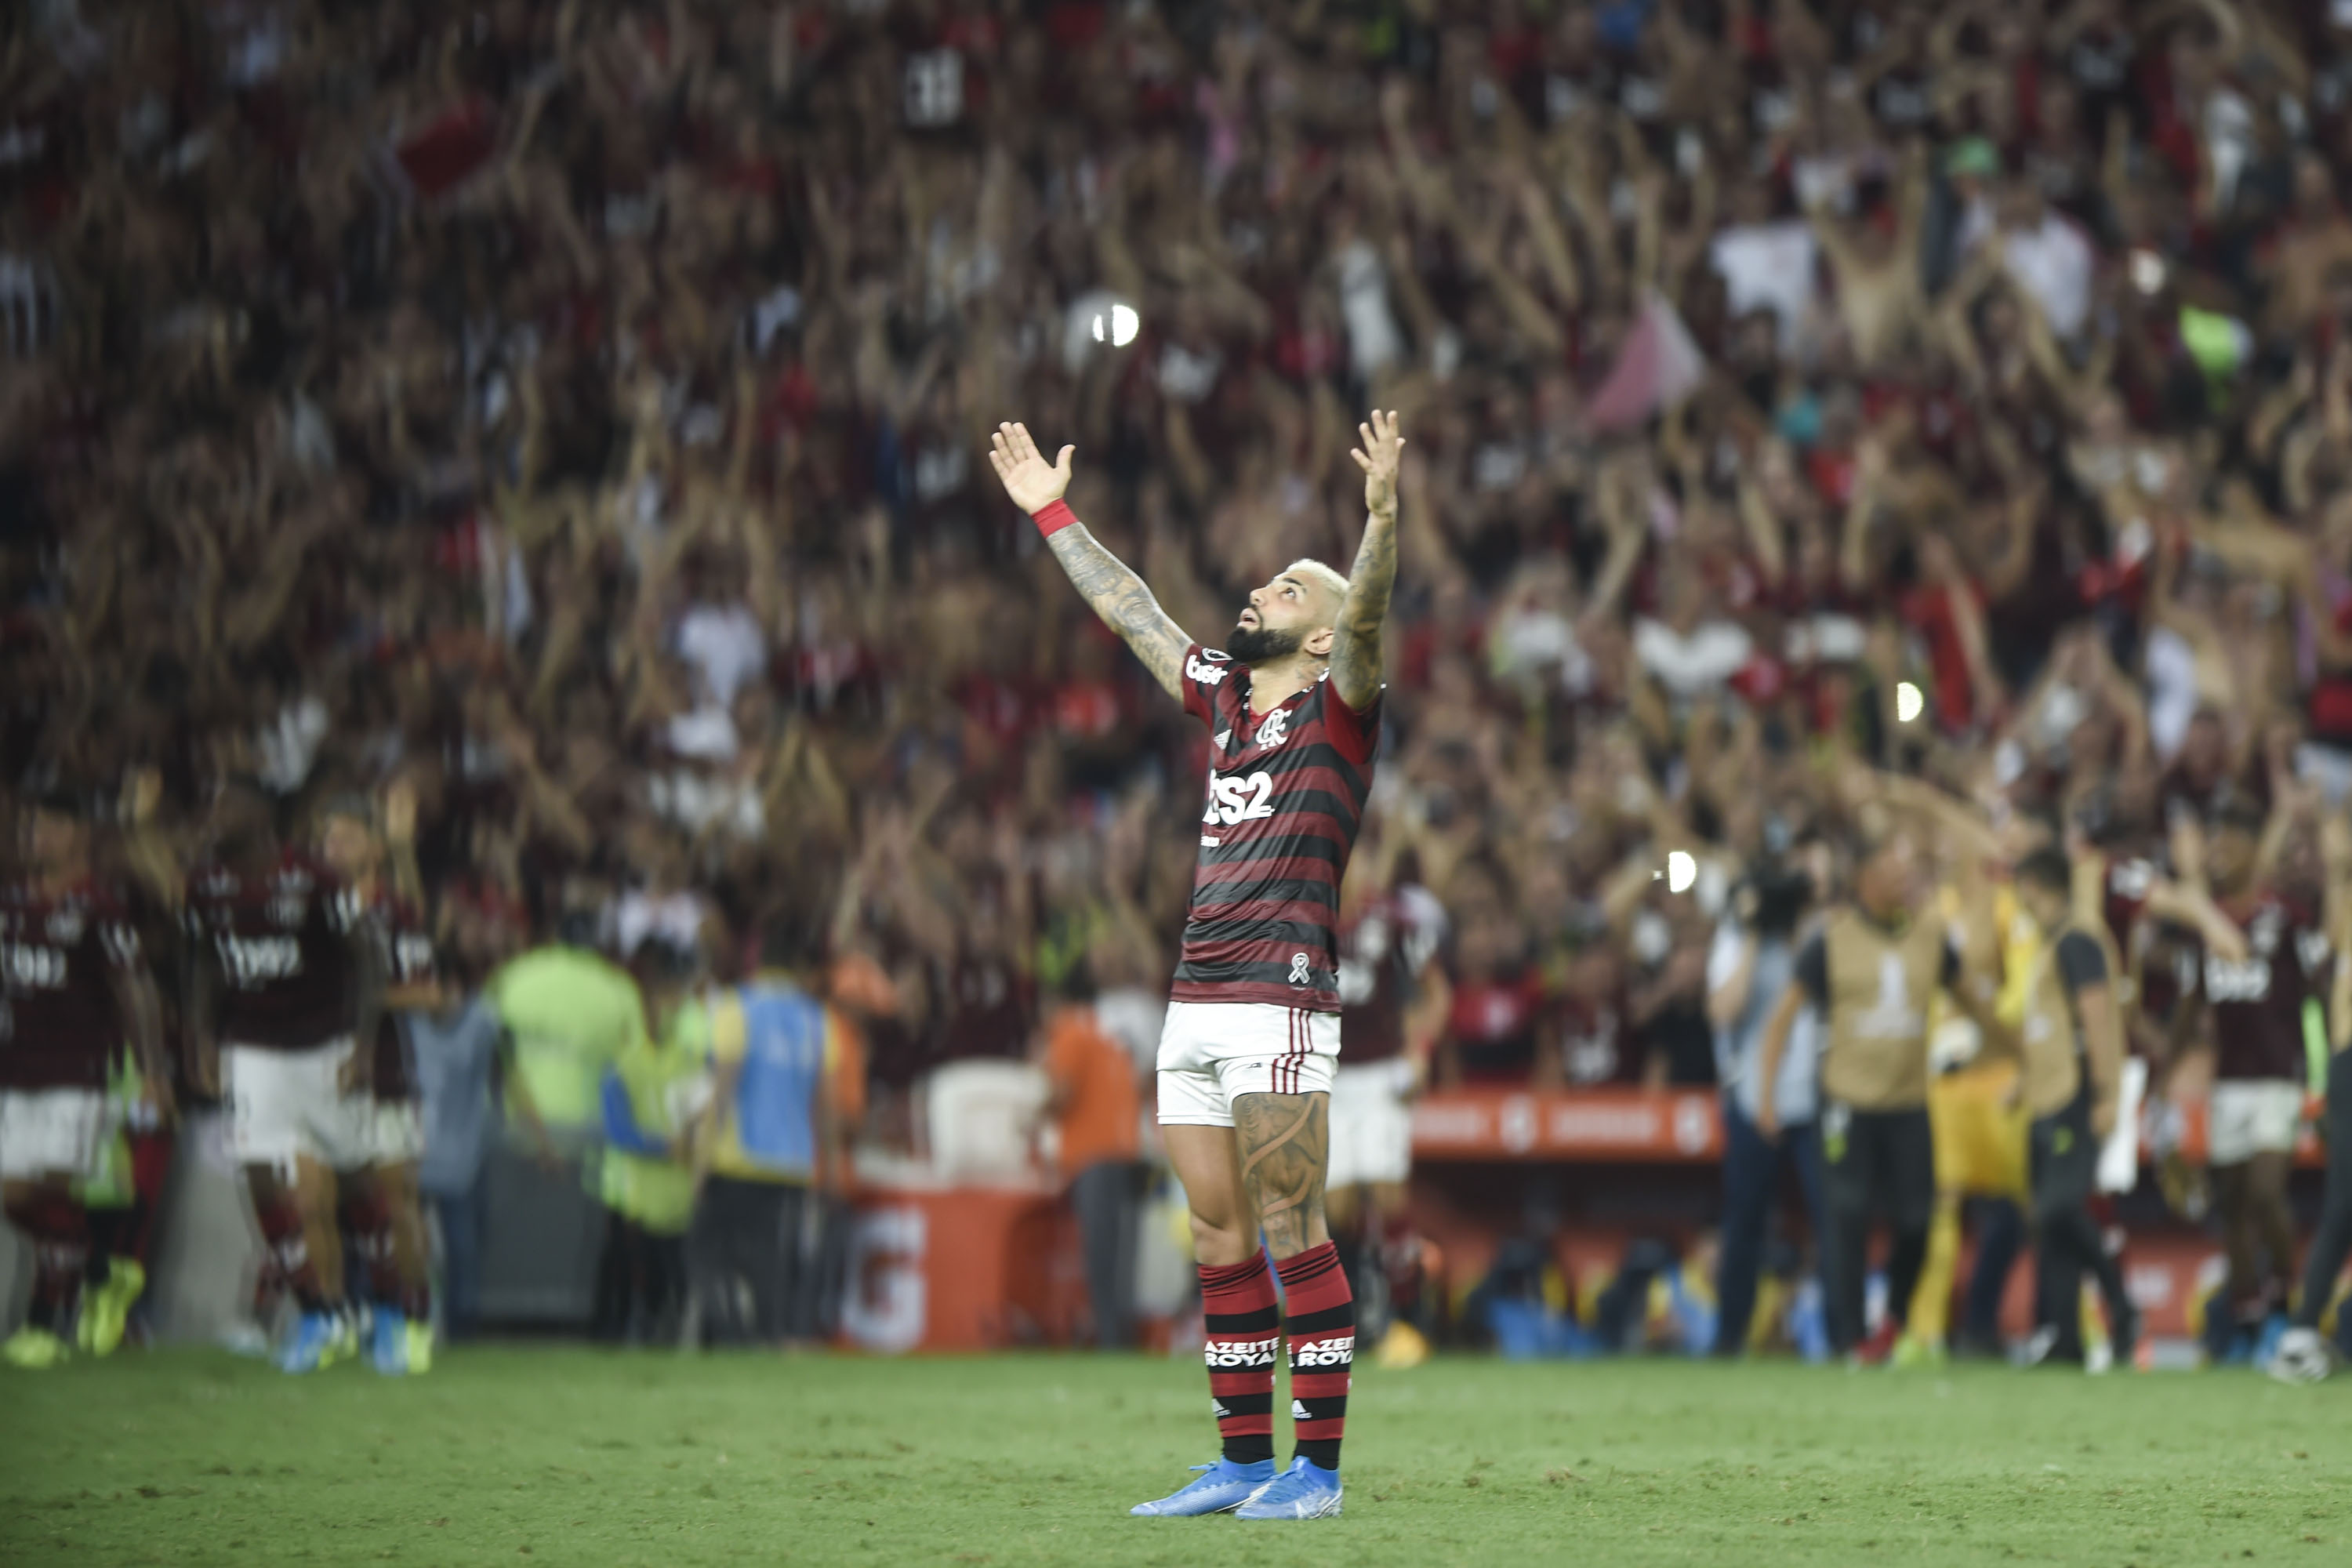 FOTOS: Flamengo goleia Grêmio e volta à final da Libertadores após 38 anos